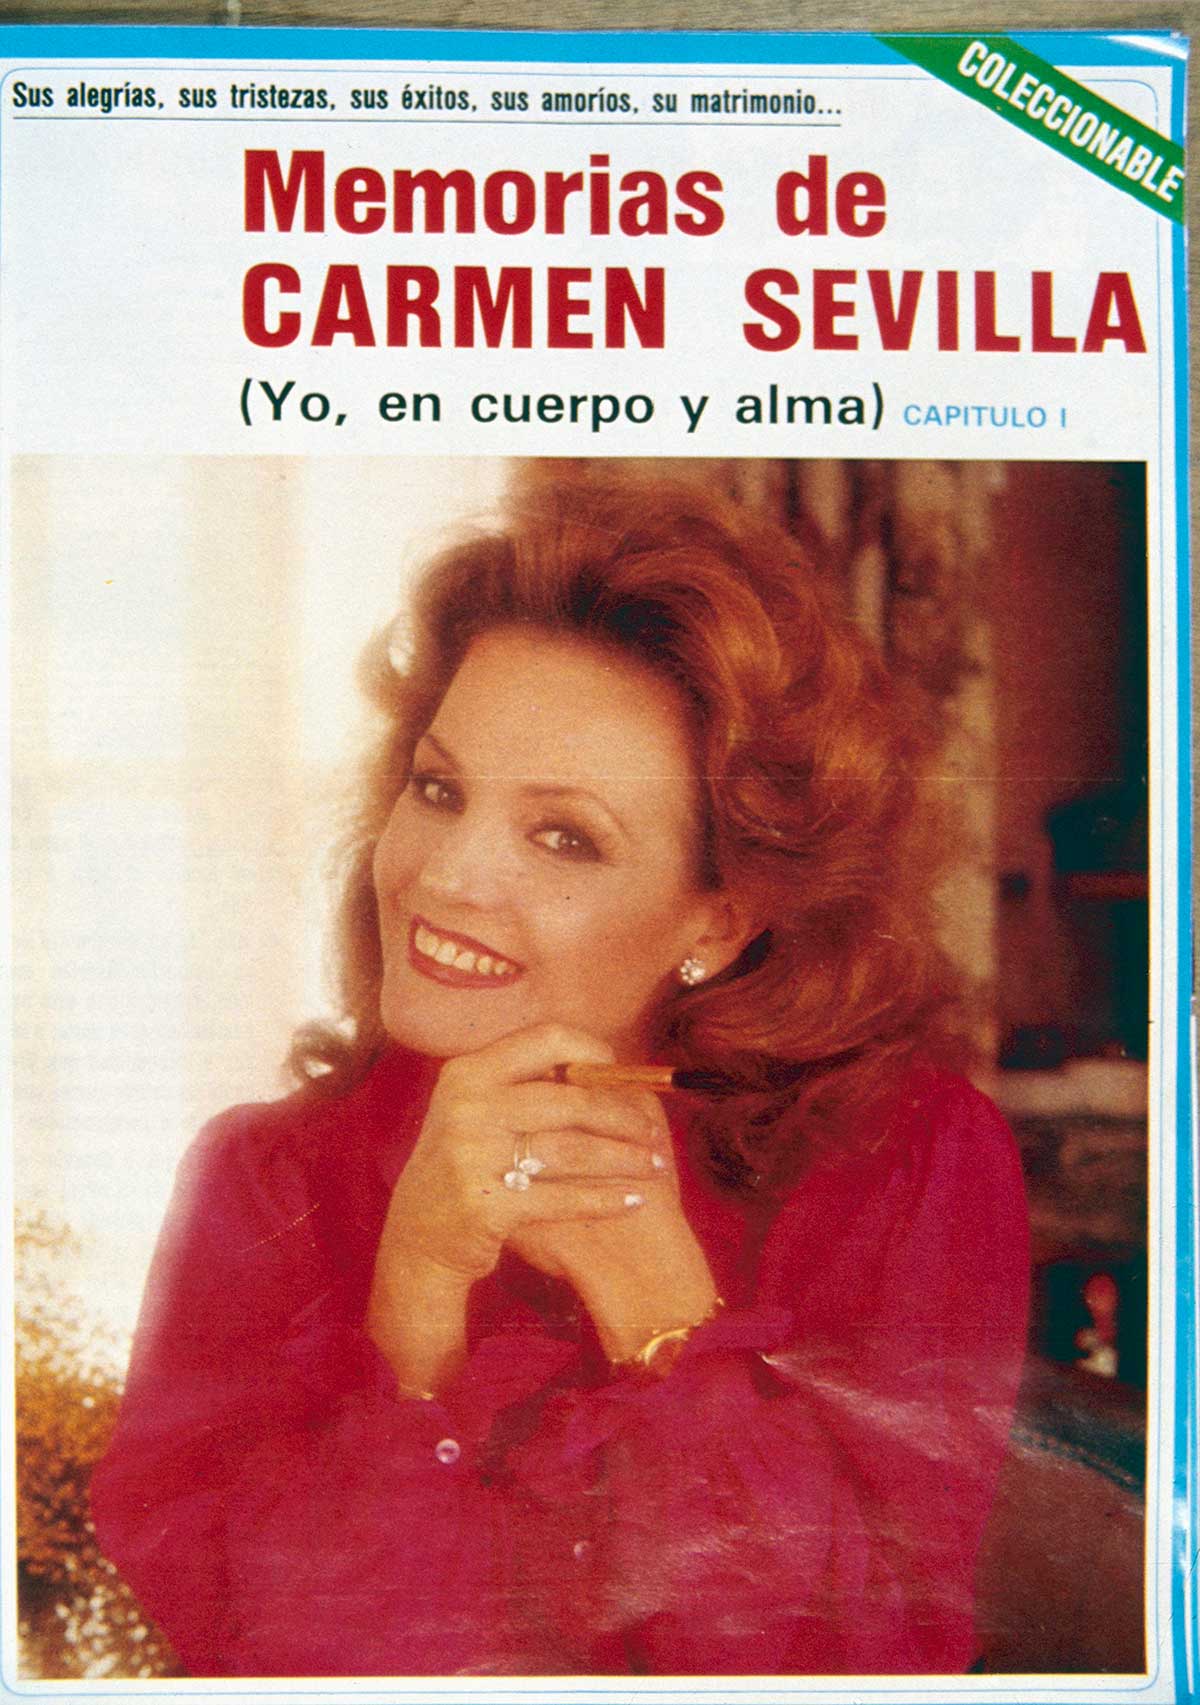 Las memorias de Carmen Sevilla, contadas por ella misma